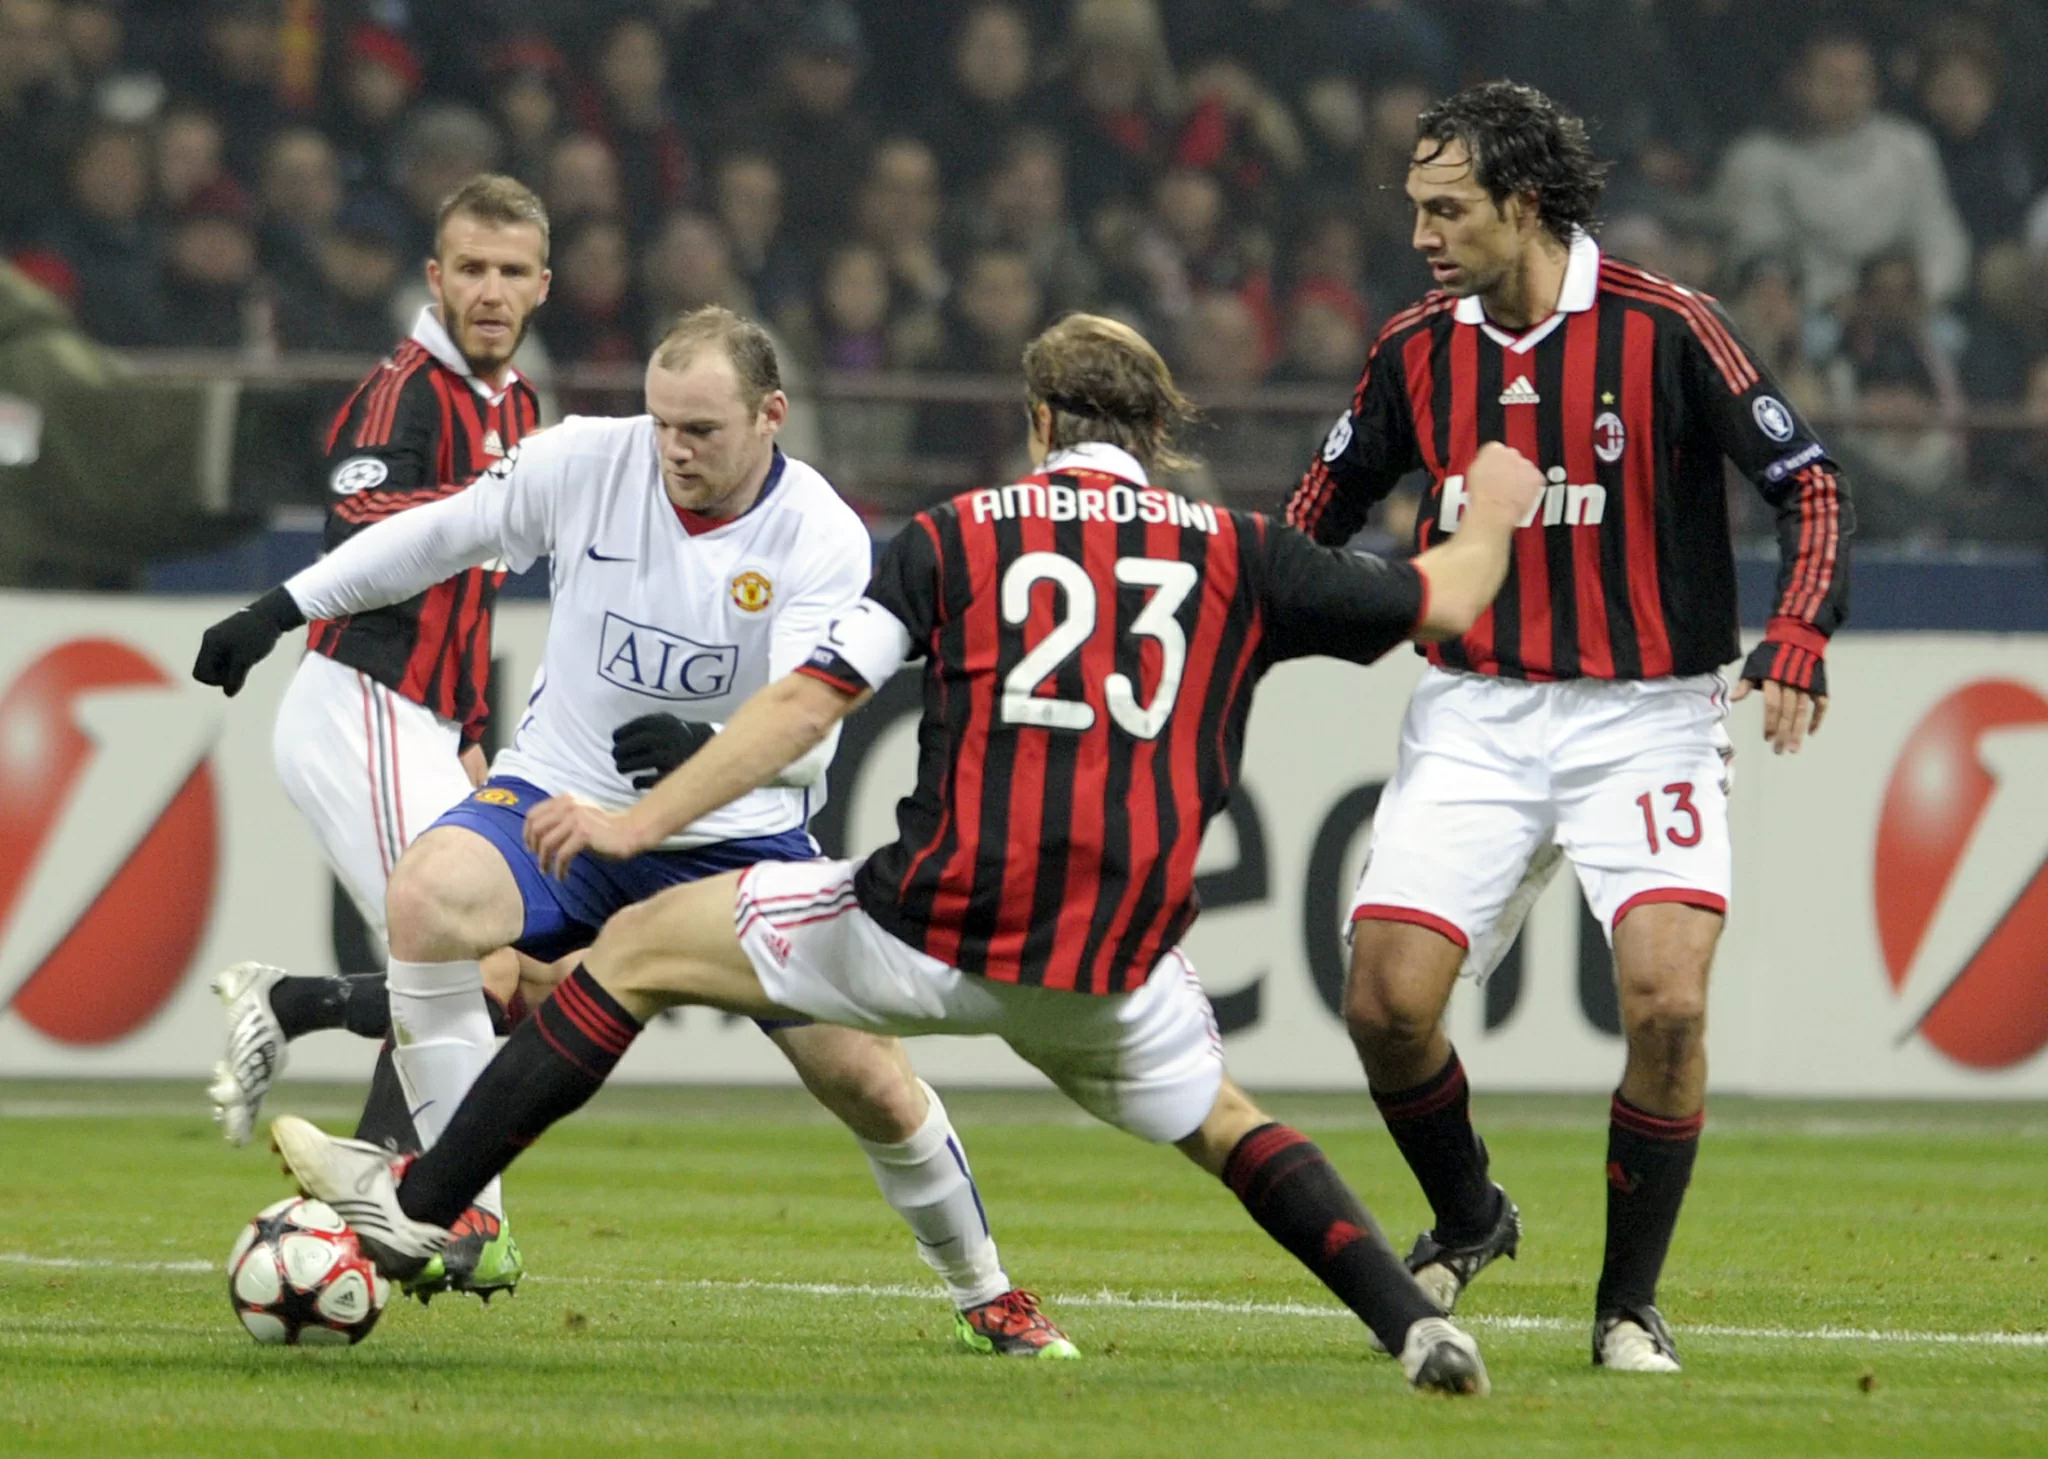 ACCADDE OGGI/ Rooney mata il Milan a San Siro. Inzaghi e Rivaldo recuperano la Lazio